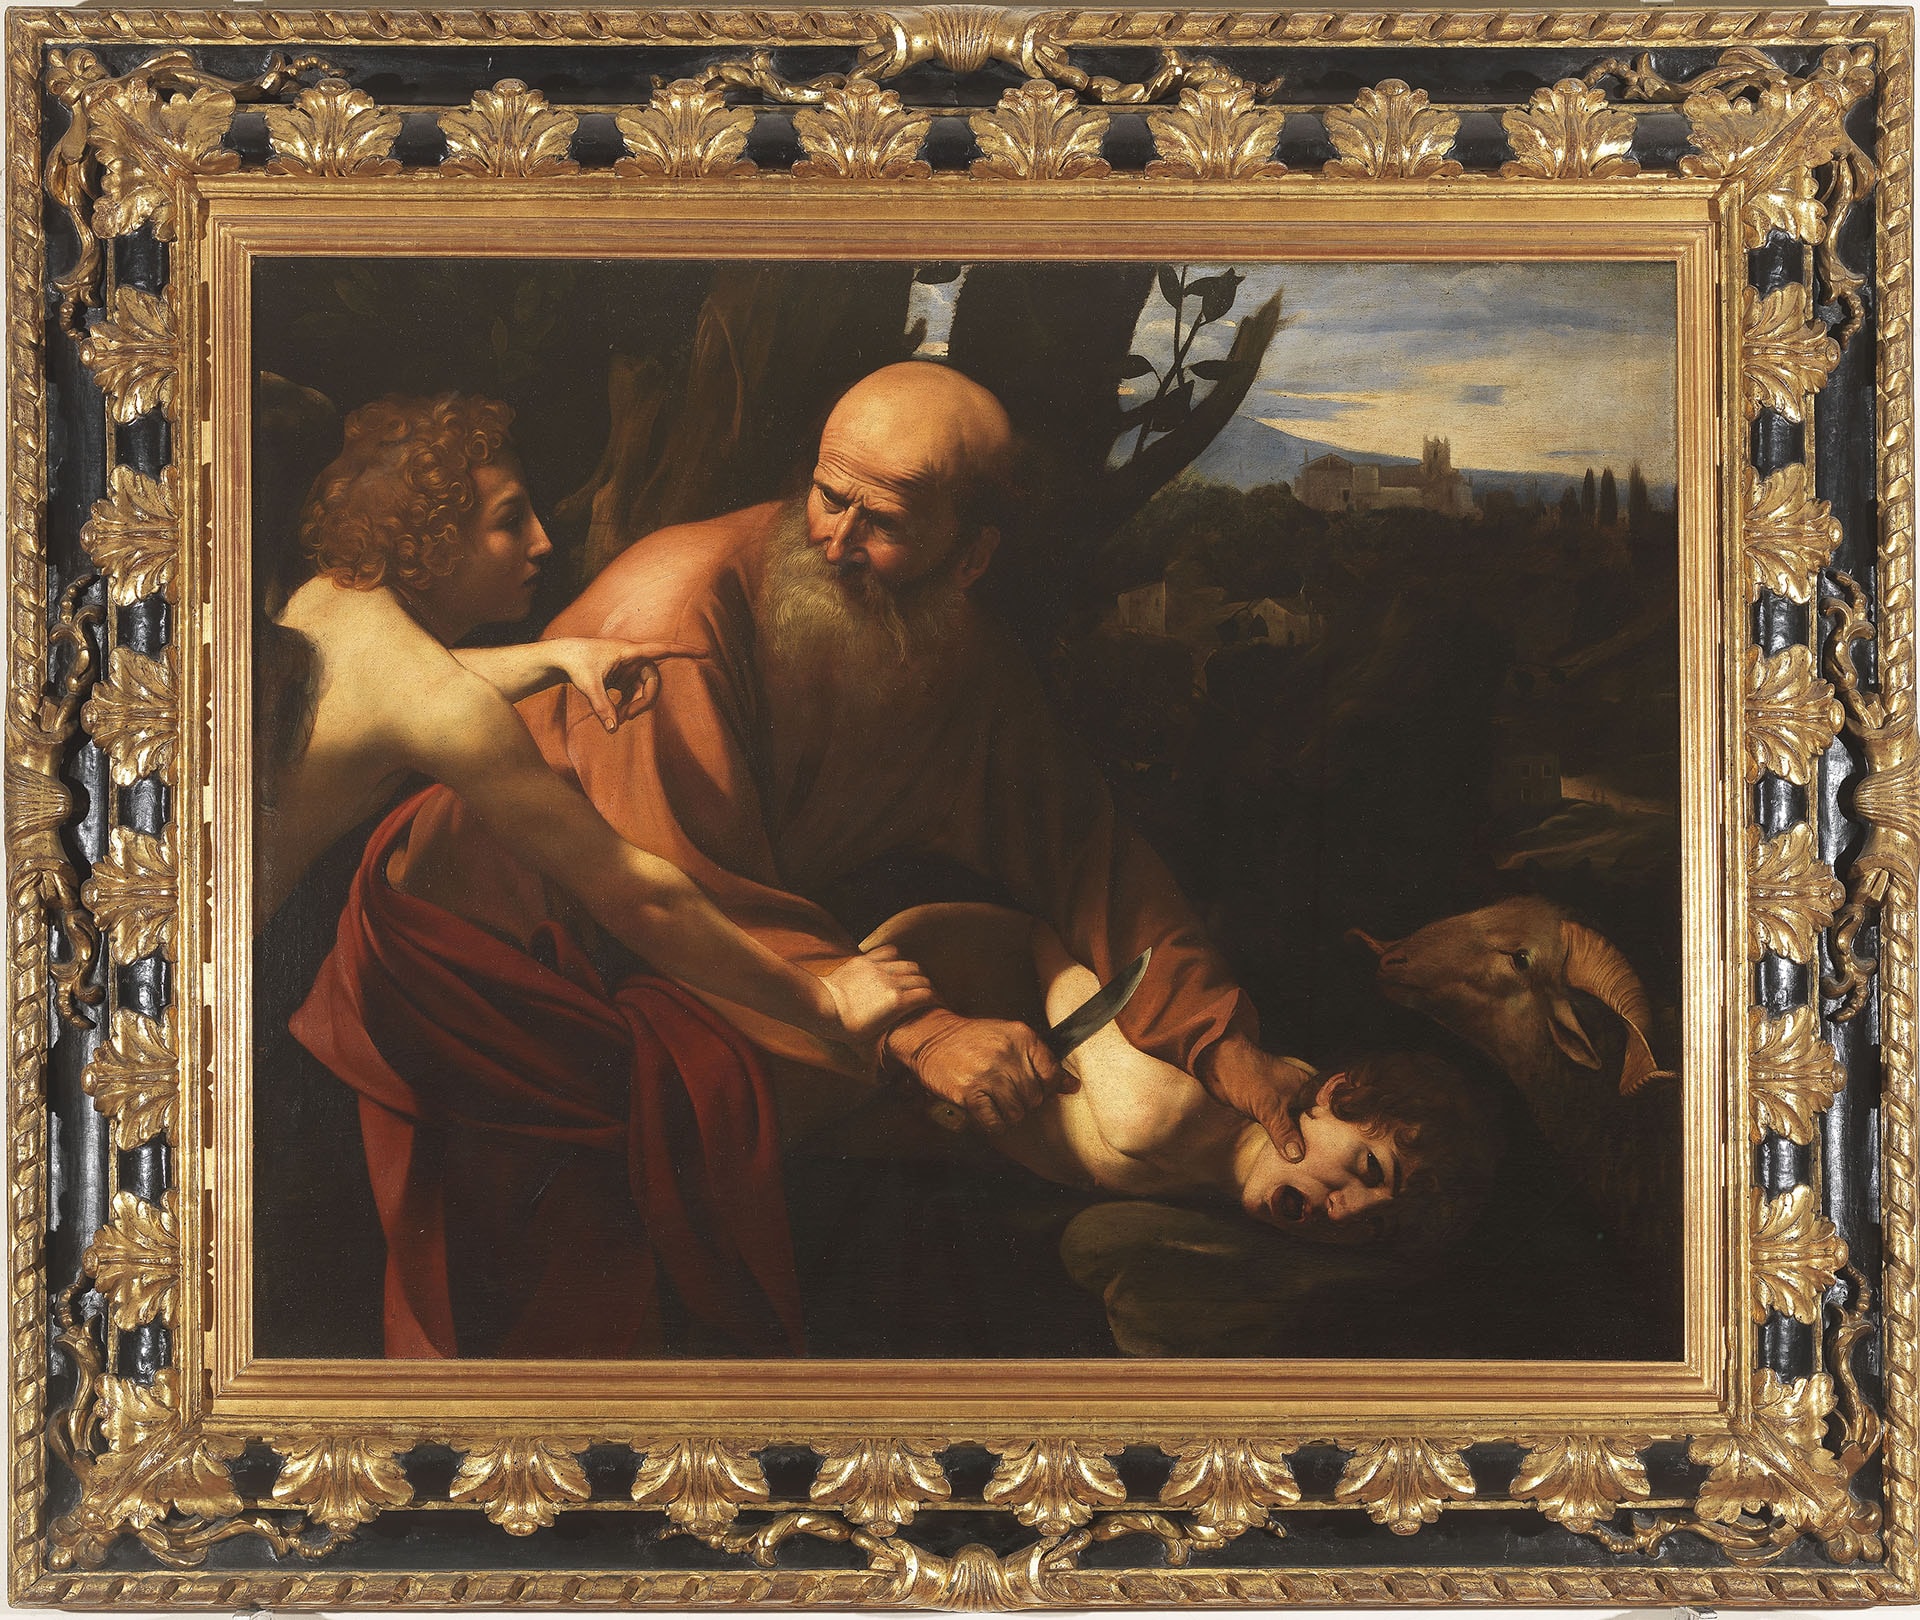 Caravaggio, Michelangelo Merisi (Milano 1571 – Porto Ercole 1610), Sacrificio di Isacco. Olio su tela, 104 x 135 cm. Firenze, Gallerie degli Uffizi